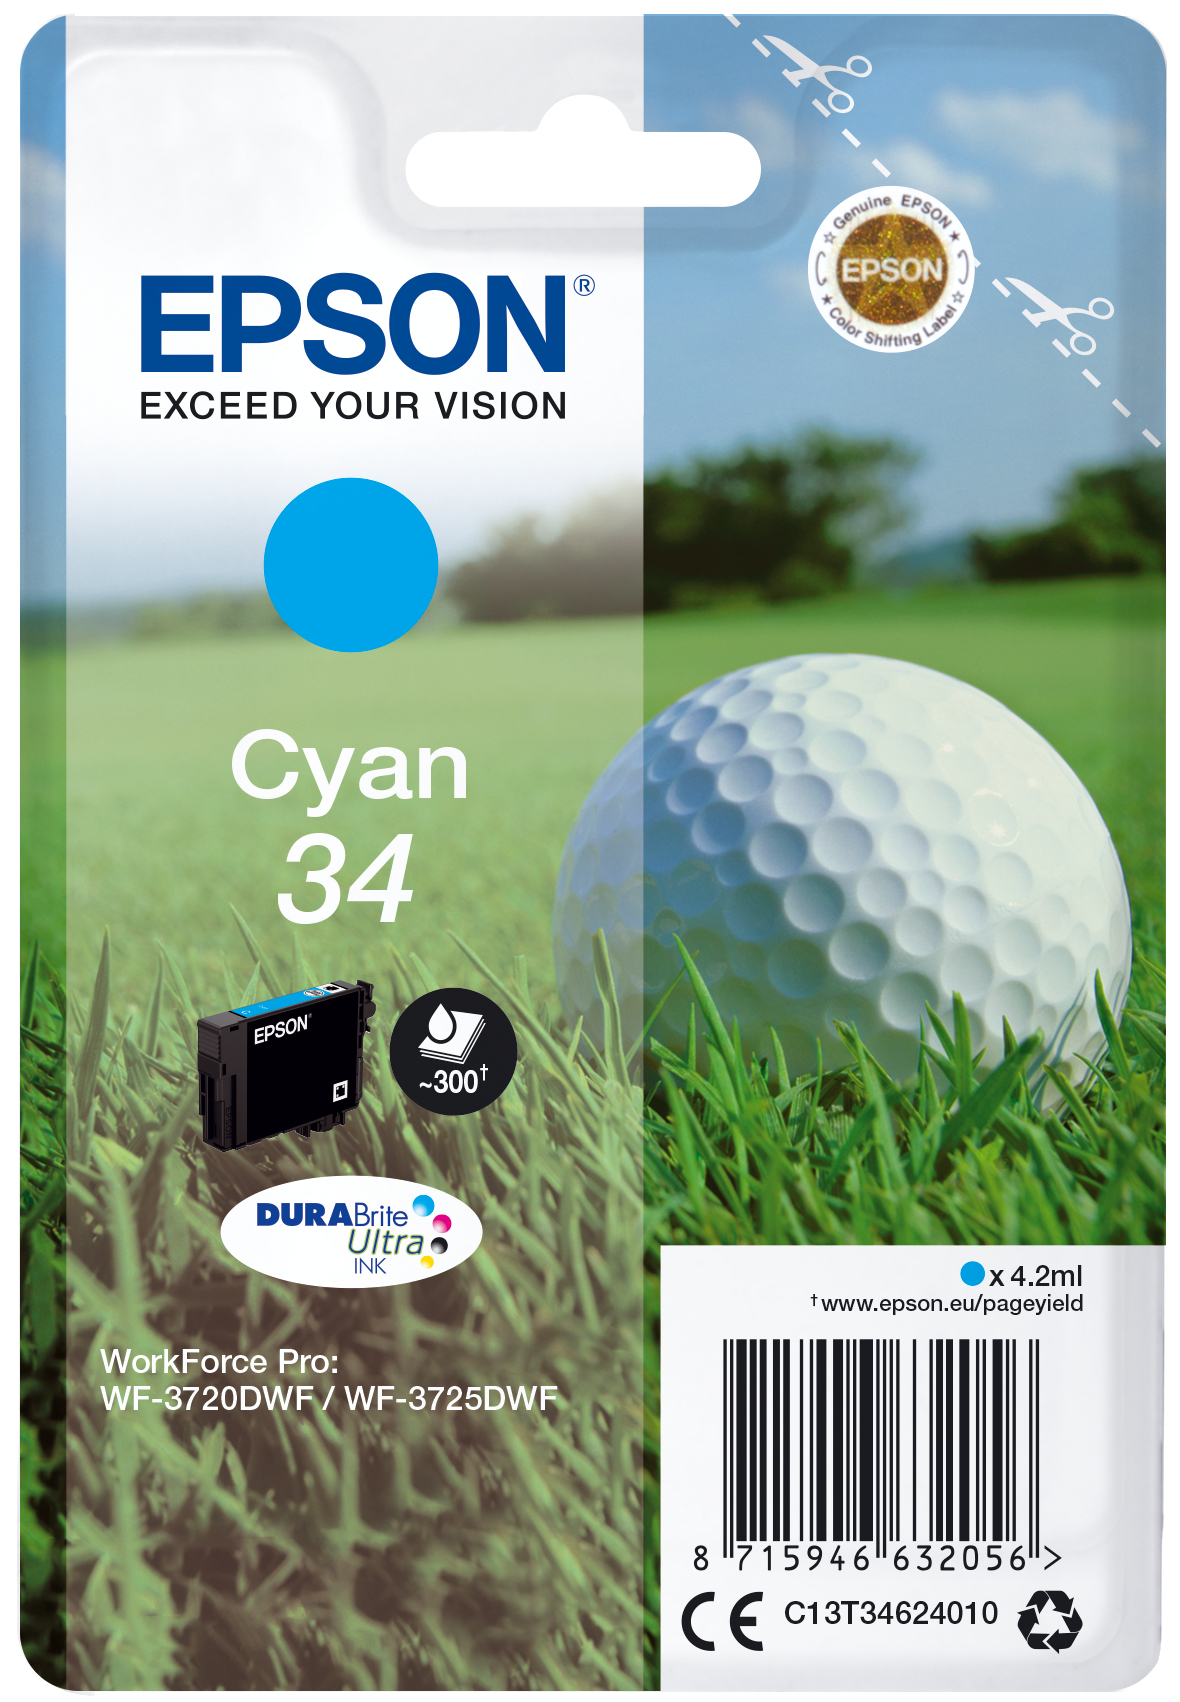 Epson Golf ball Singlepack Cyan 34 DURABrite Ultra Ink - Standardertrag - 4,2 ml - 300 Seiten - 1 Stück(e)